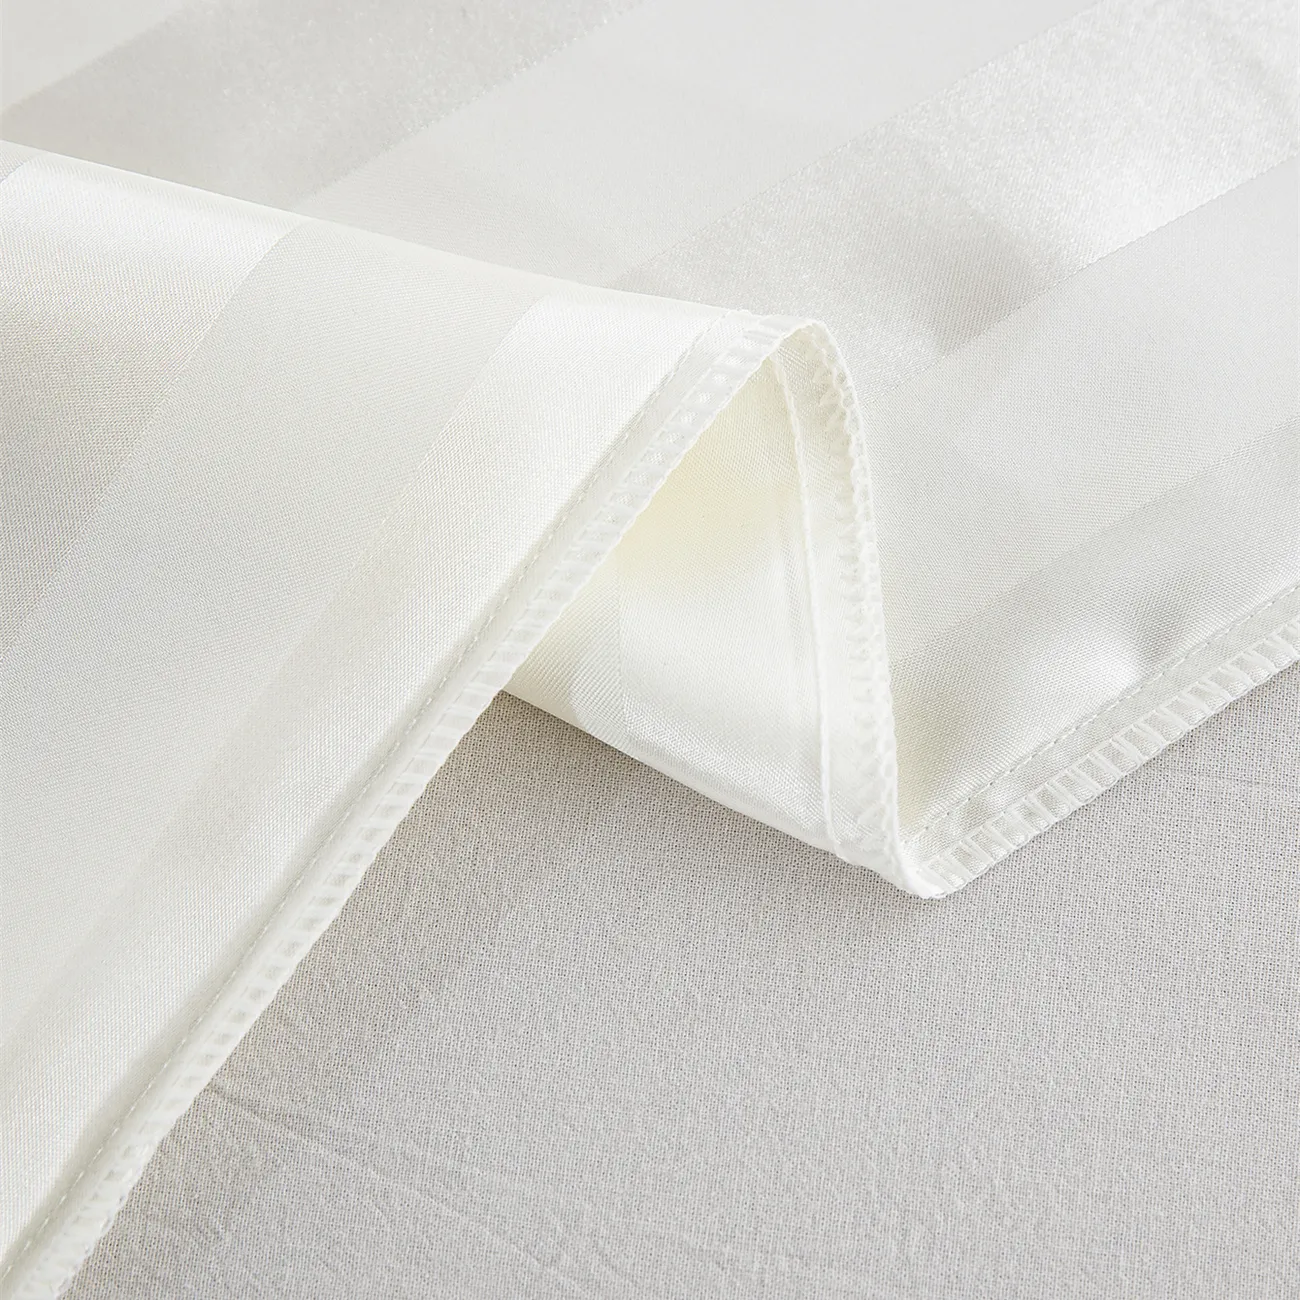 2 fundas de almohada de satén sólido de lujo discretas en 4 tamaños para ropa de cama Blanco big image 1